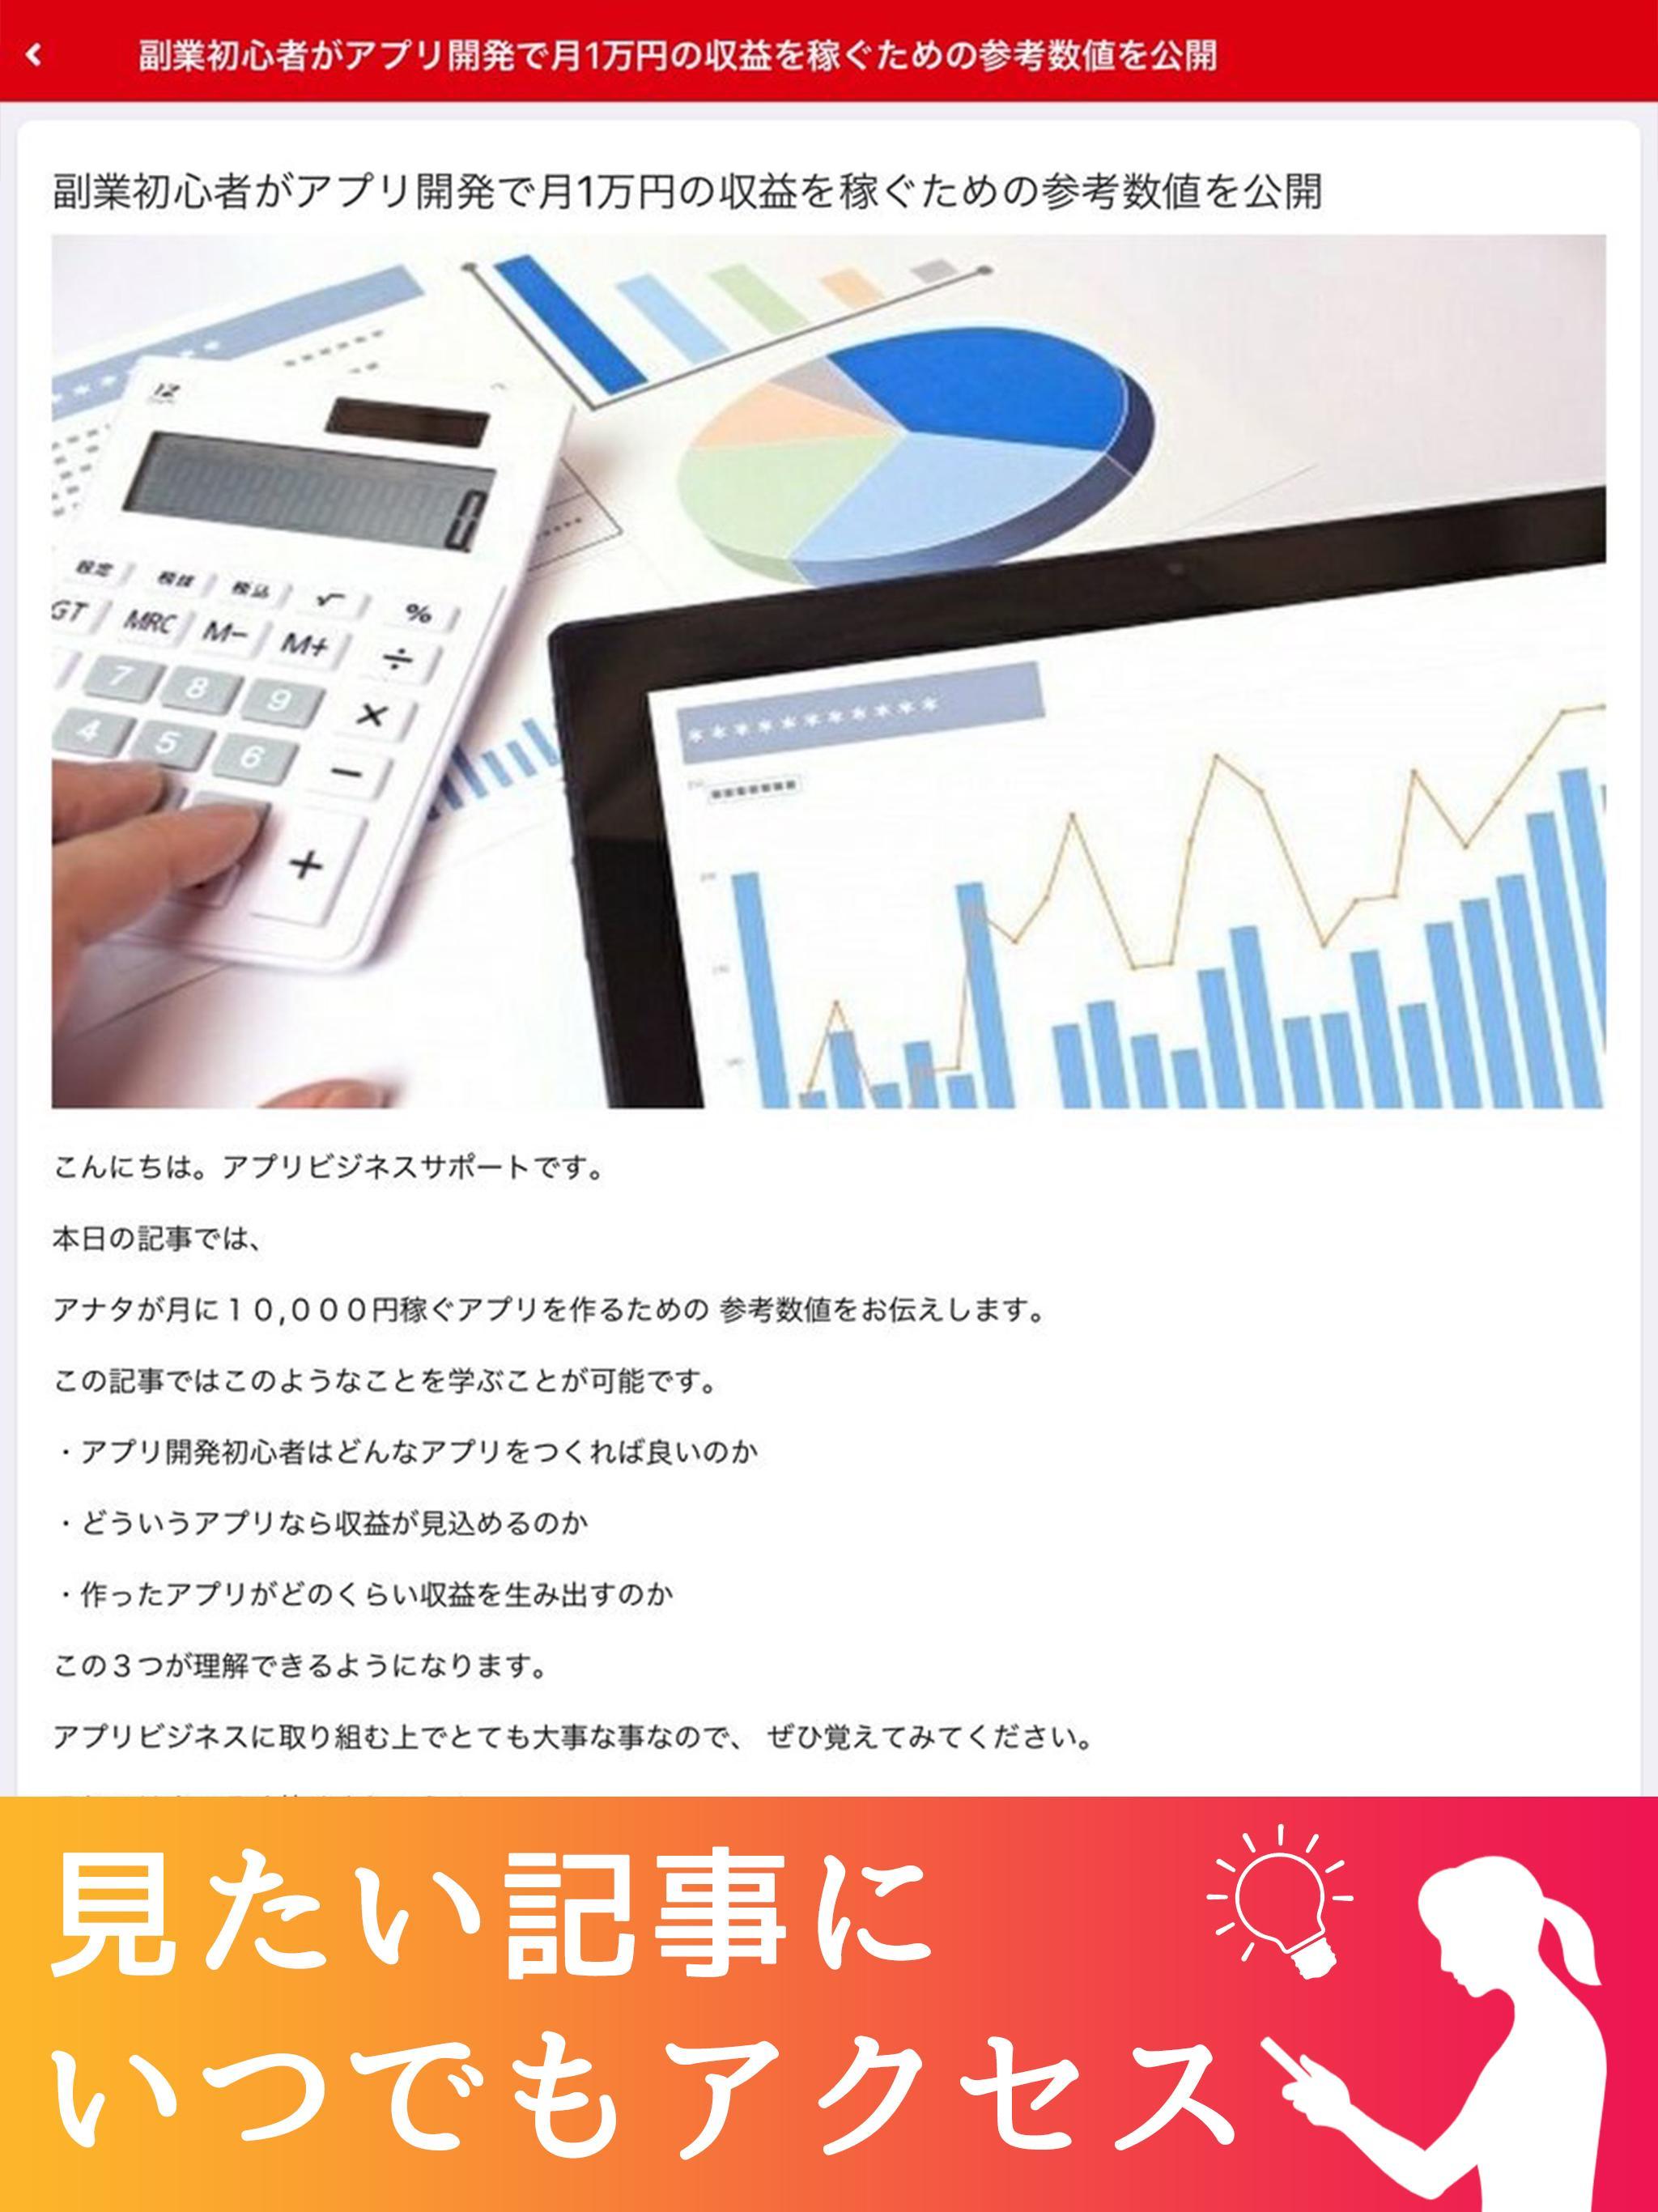 上田幸司公式アプリ 1.4.0 Screenshot 11